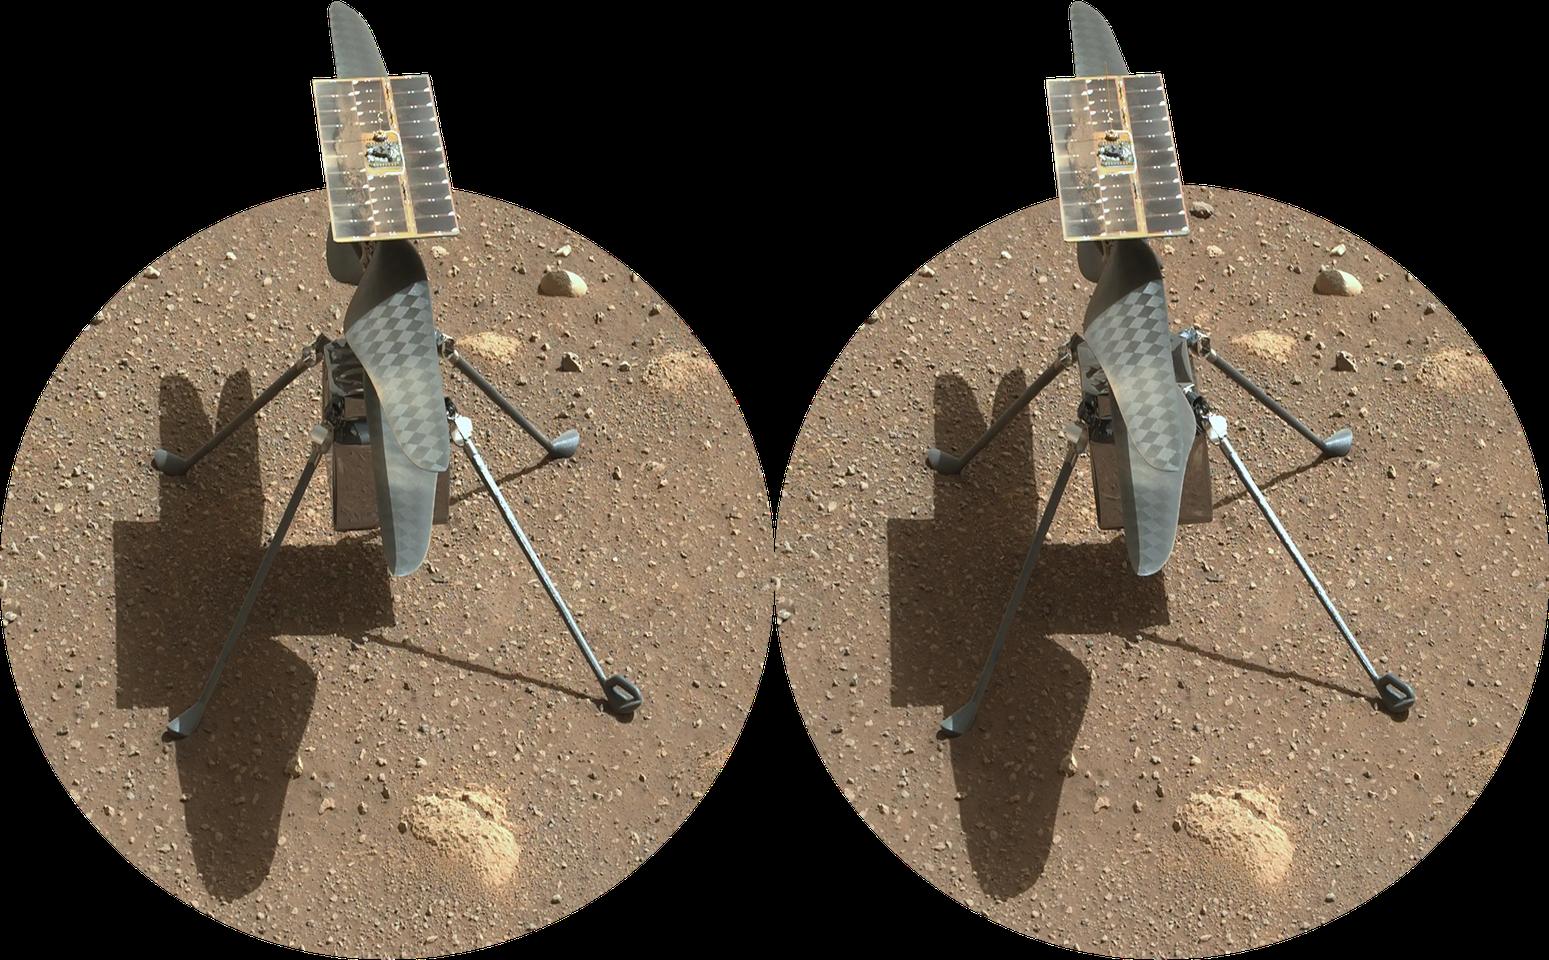 Ingenuity deployed on Mars